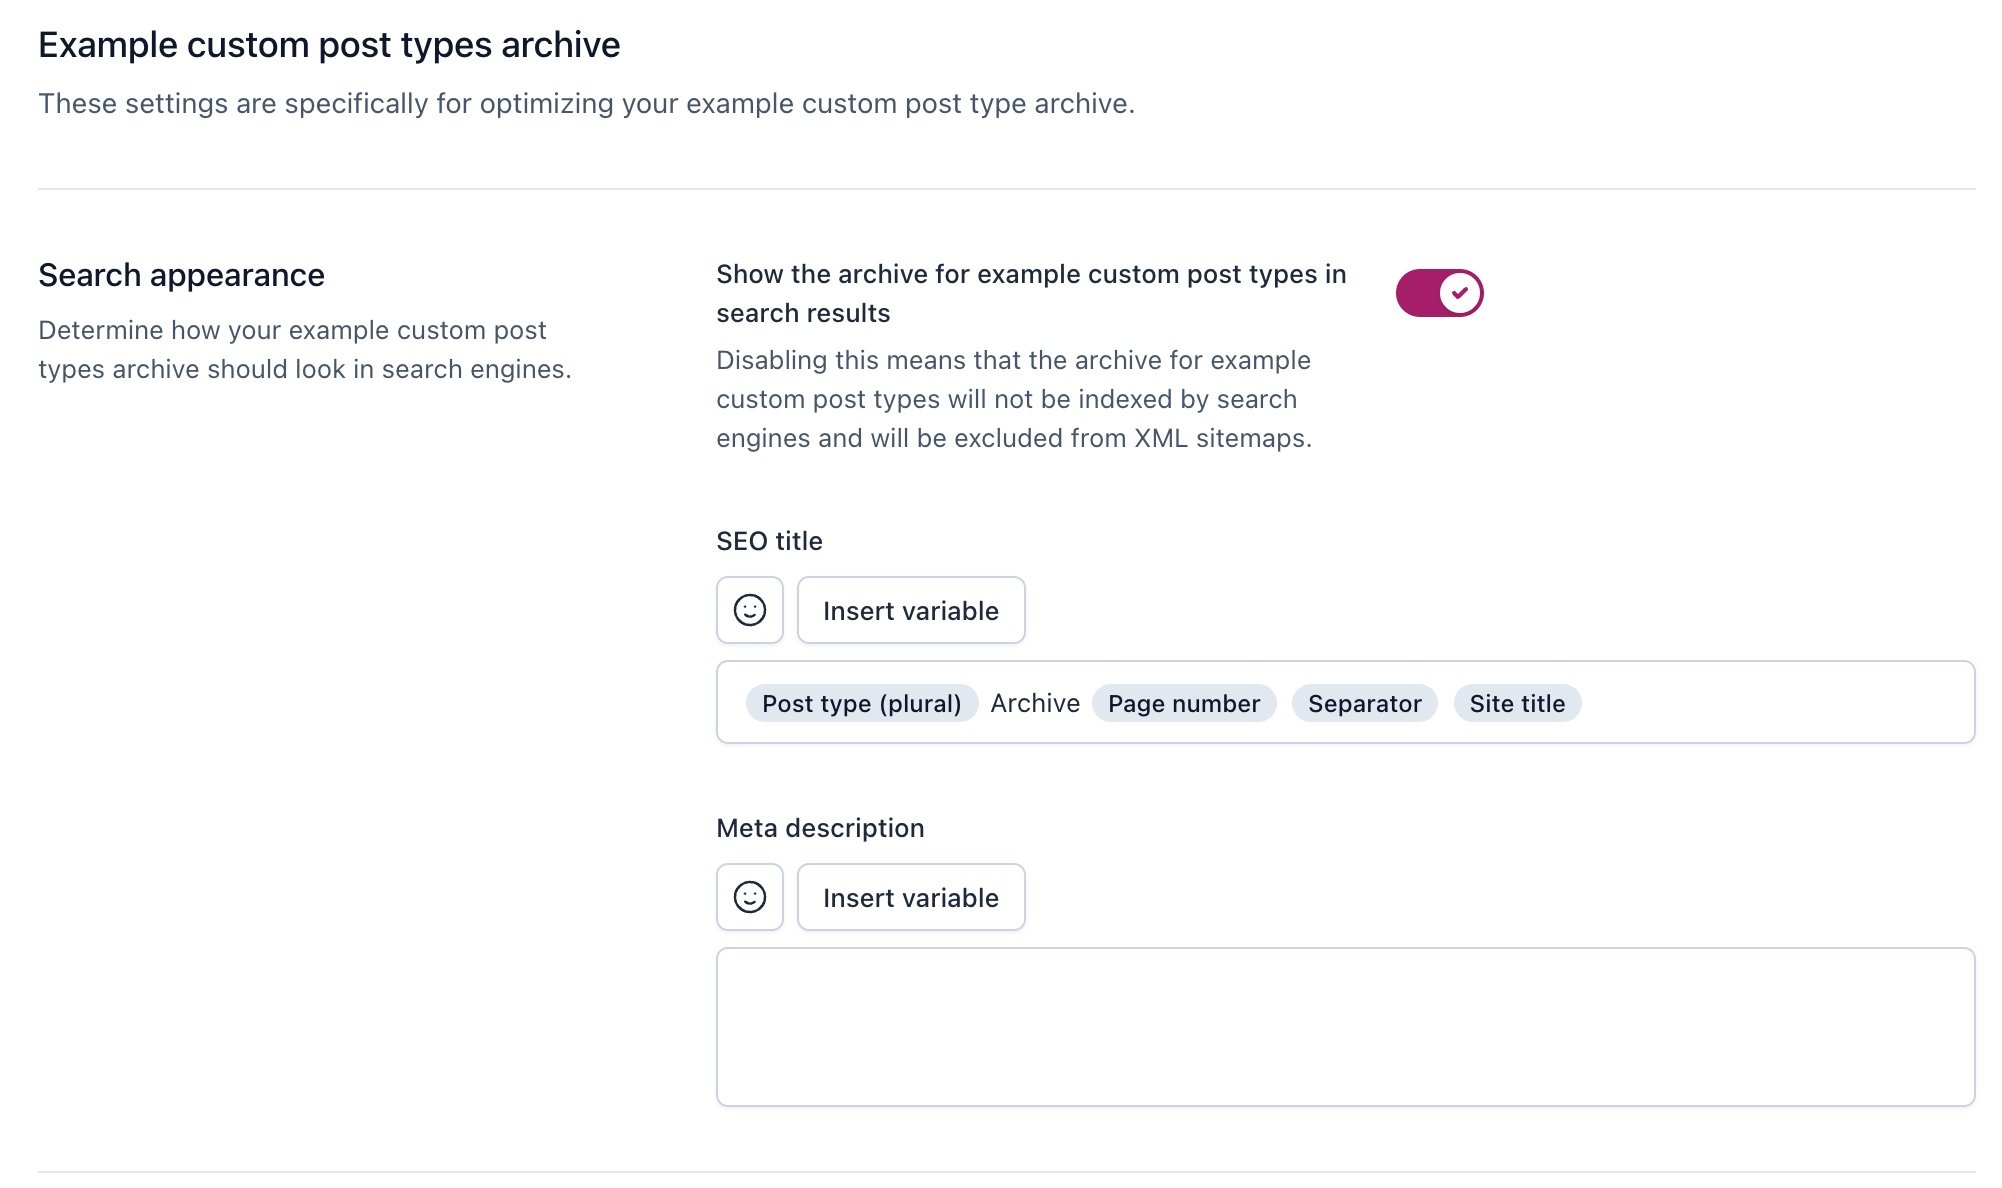 Screenshot of the custom post type archive settings in Yoast SEO